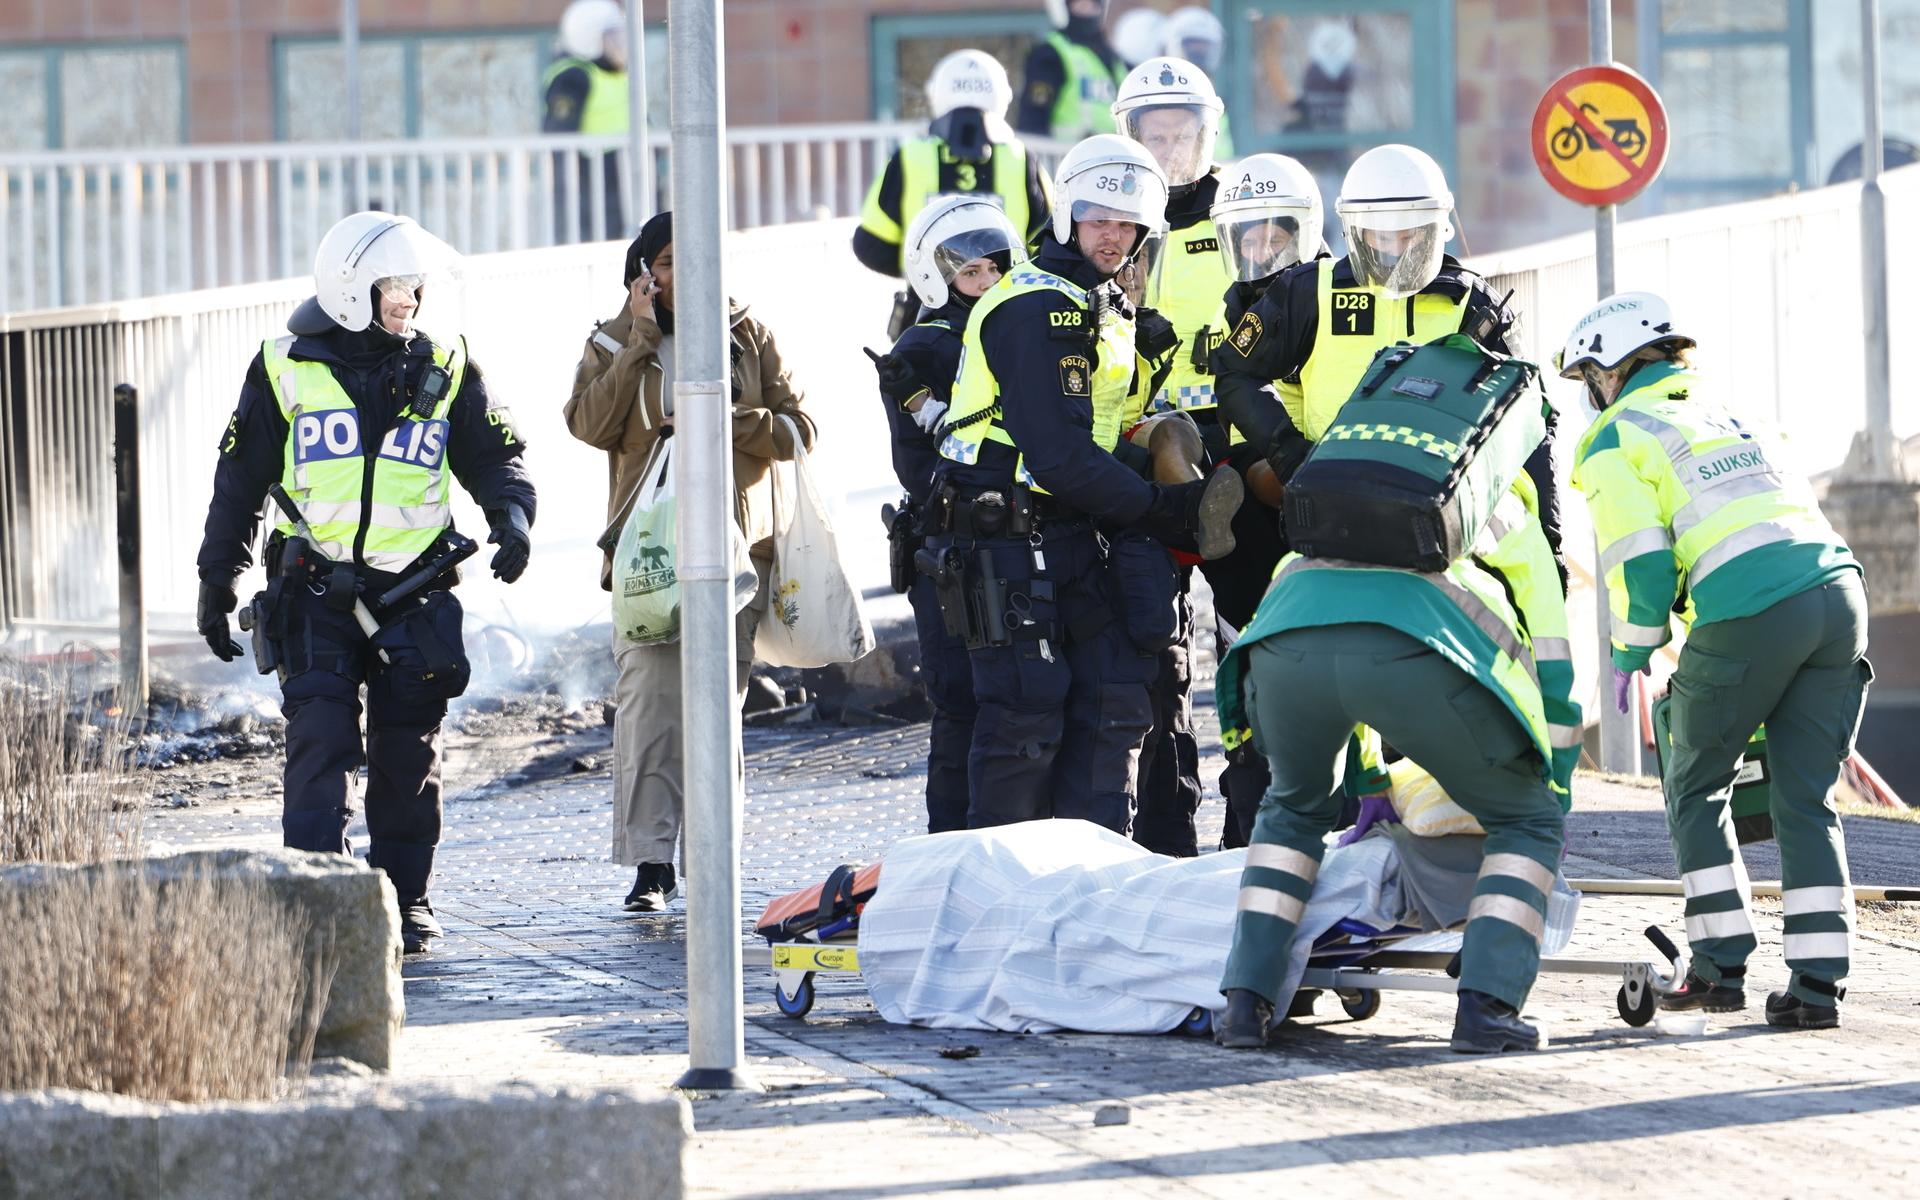 Polis och ambulanspersonal bär på en skadad man som skjutits i benet under upploppen i Navestad i Norrköping på påskdagen.Oroligheterna utlöstes av att den högerextrema provokatören Rasmus Paludan har sagt att han ska återvända till Östergötland för nya demonstrationer under dagen.